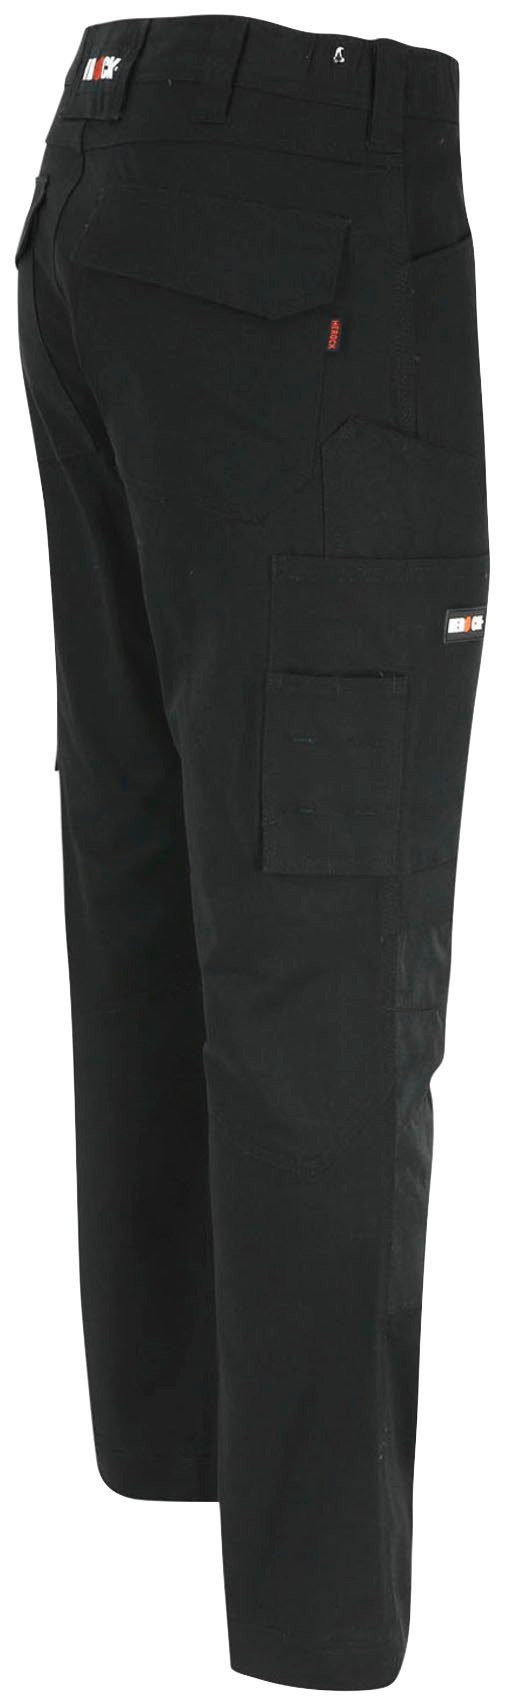 Herock Arbeitshose DERO wasserabweisend 2-Wege-Stretch, Passform, schwarz Multi-Pocket, Slim Fit